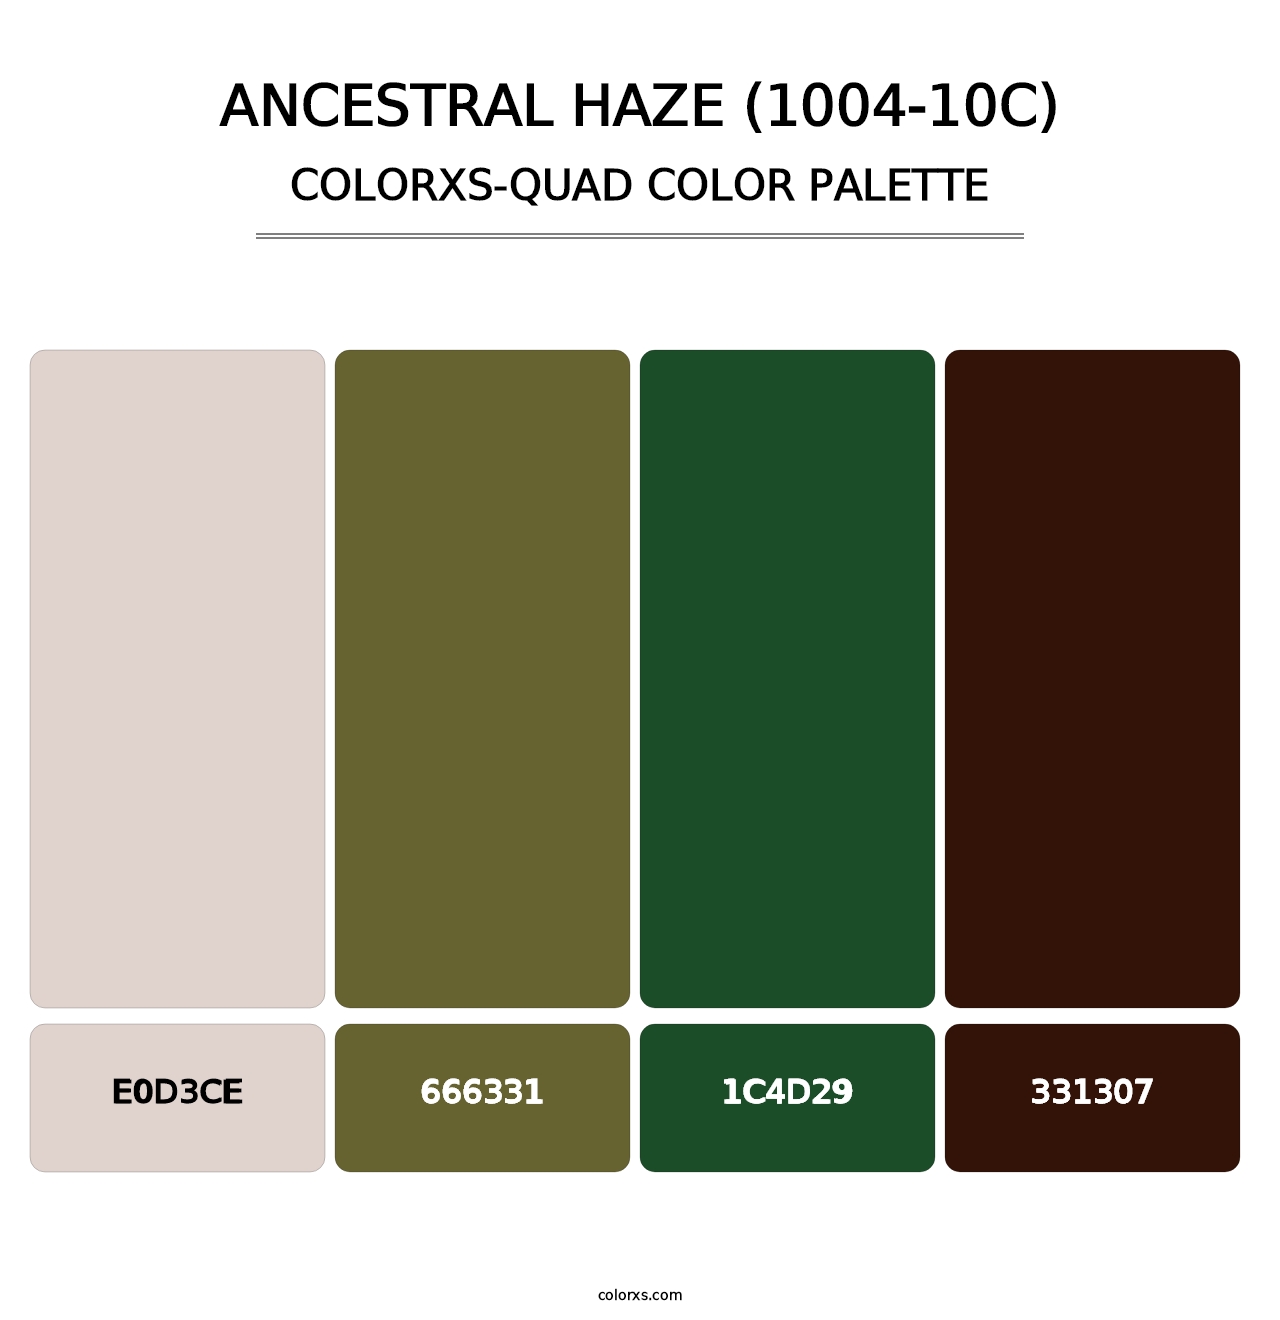 Ancestral Haze (1004-10C) - Colorxs Quad Palette